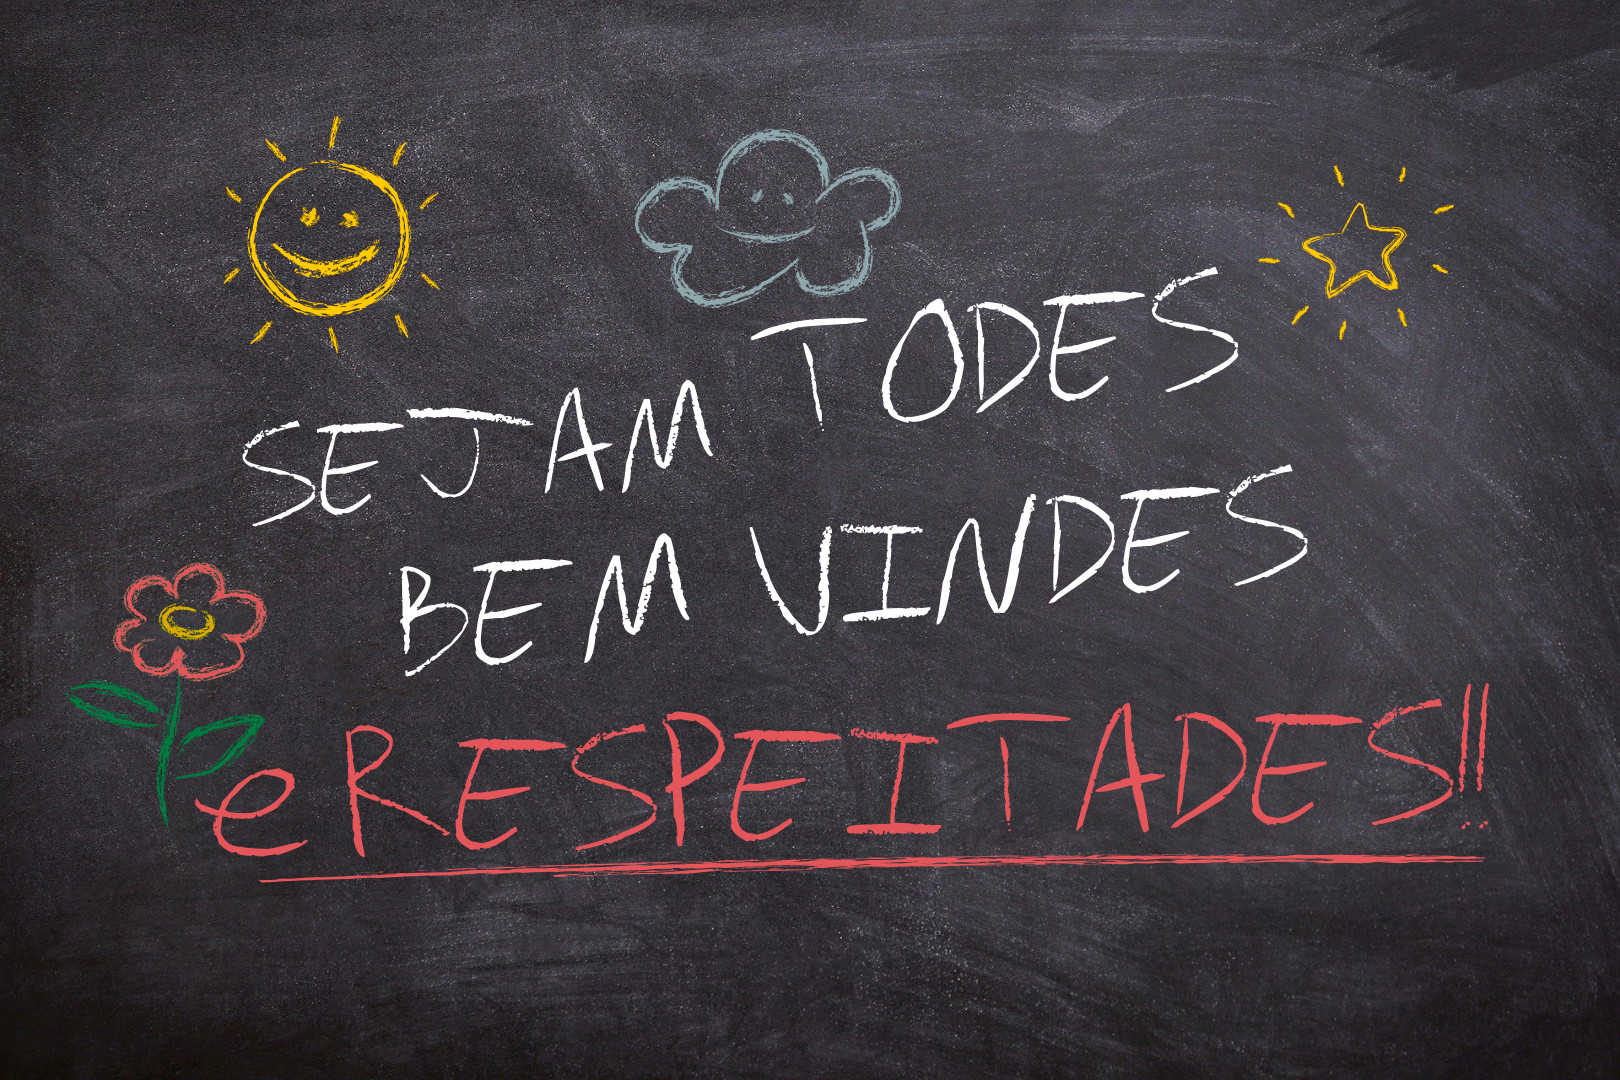 Professora é demitida após ensinar linguagem neutra em escola de Santa Catarina